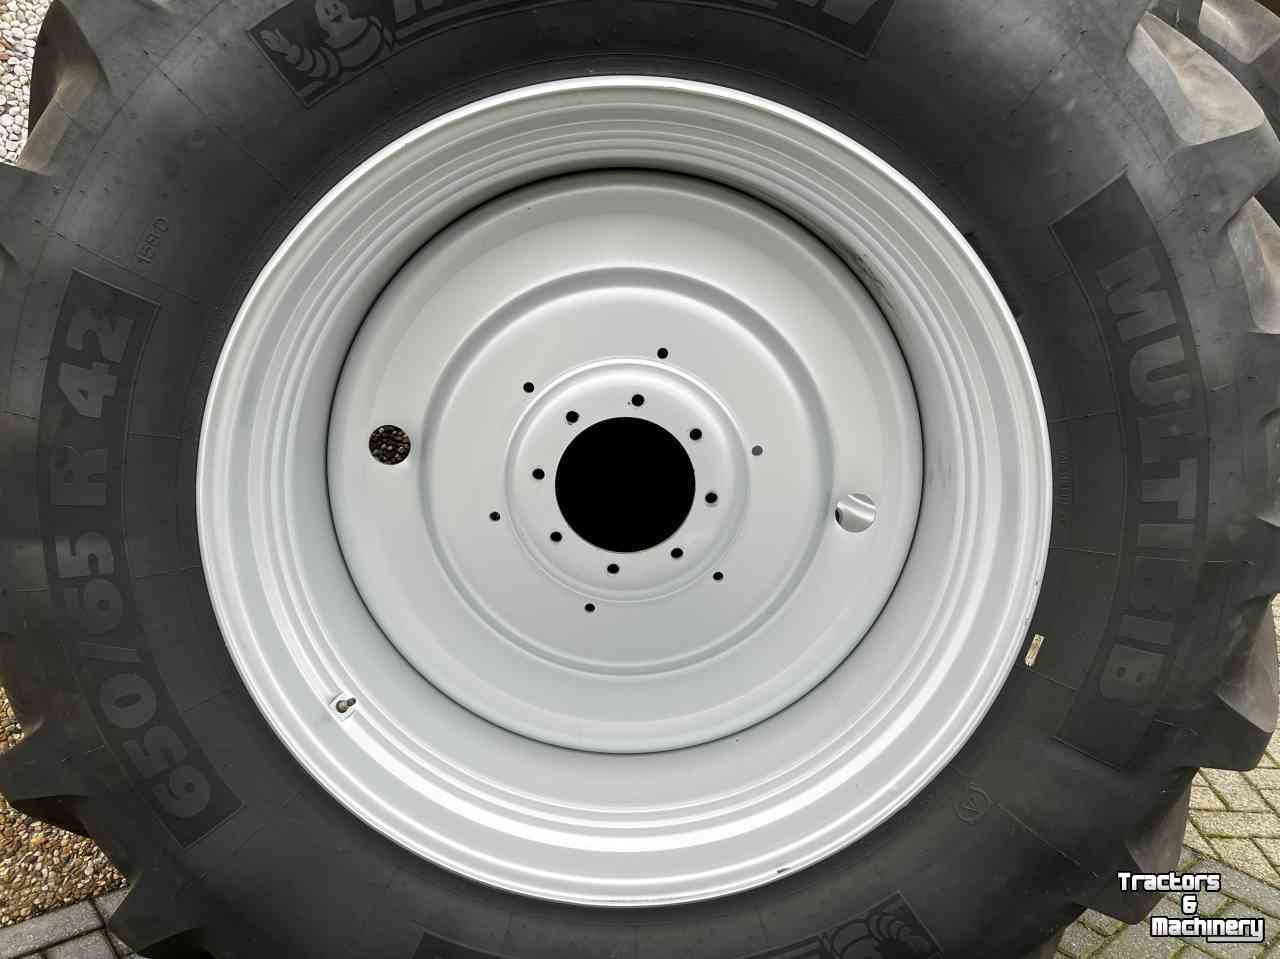 Wheels, Tyres, Rims & Dual spacers Michelin 650/65R42 MultiBib 95% met vaste velg 221/265/8gaats